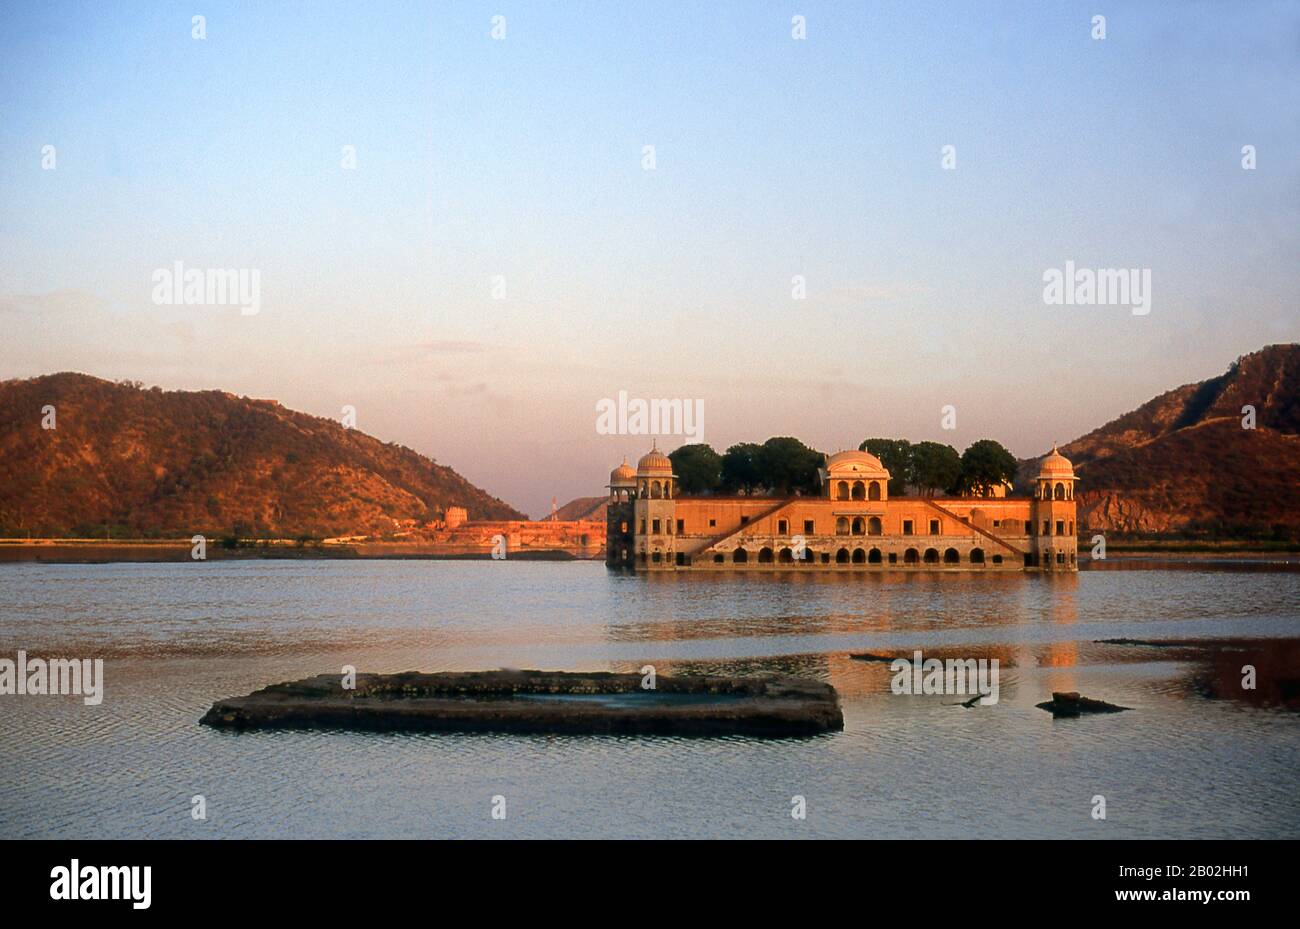 Der Jal Mahal- oder Wasserpalast und der Man Sagar See wurden im 18. Jahrhundert von Maharaja Sawai Jai Singh II. Renoviert und erweitert. Jaipur ist die Hauptstadt und größte Stadt des indischen Bundesstaats Rajasthan. Sie wurde am 18. November 1727 von Maharaja Sawai Jai Singh II., dem Machthaber von Amber, gegründet, nach dem die Stadt benannt wurde. Die Stadt zählt heute 3,1 Millionen Einwohner. Jaipur ist als Pink City of India bekannt. Die Stadt ist bemerkenswert unter den vormodernen indischen Städten für die Breite und Regelmäßigkeit ihrer Straßen, die in sechs Sektoren aufgeteilt sind, die durch breite Straßen 34 m breit sind. Stockfoto